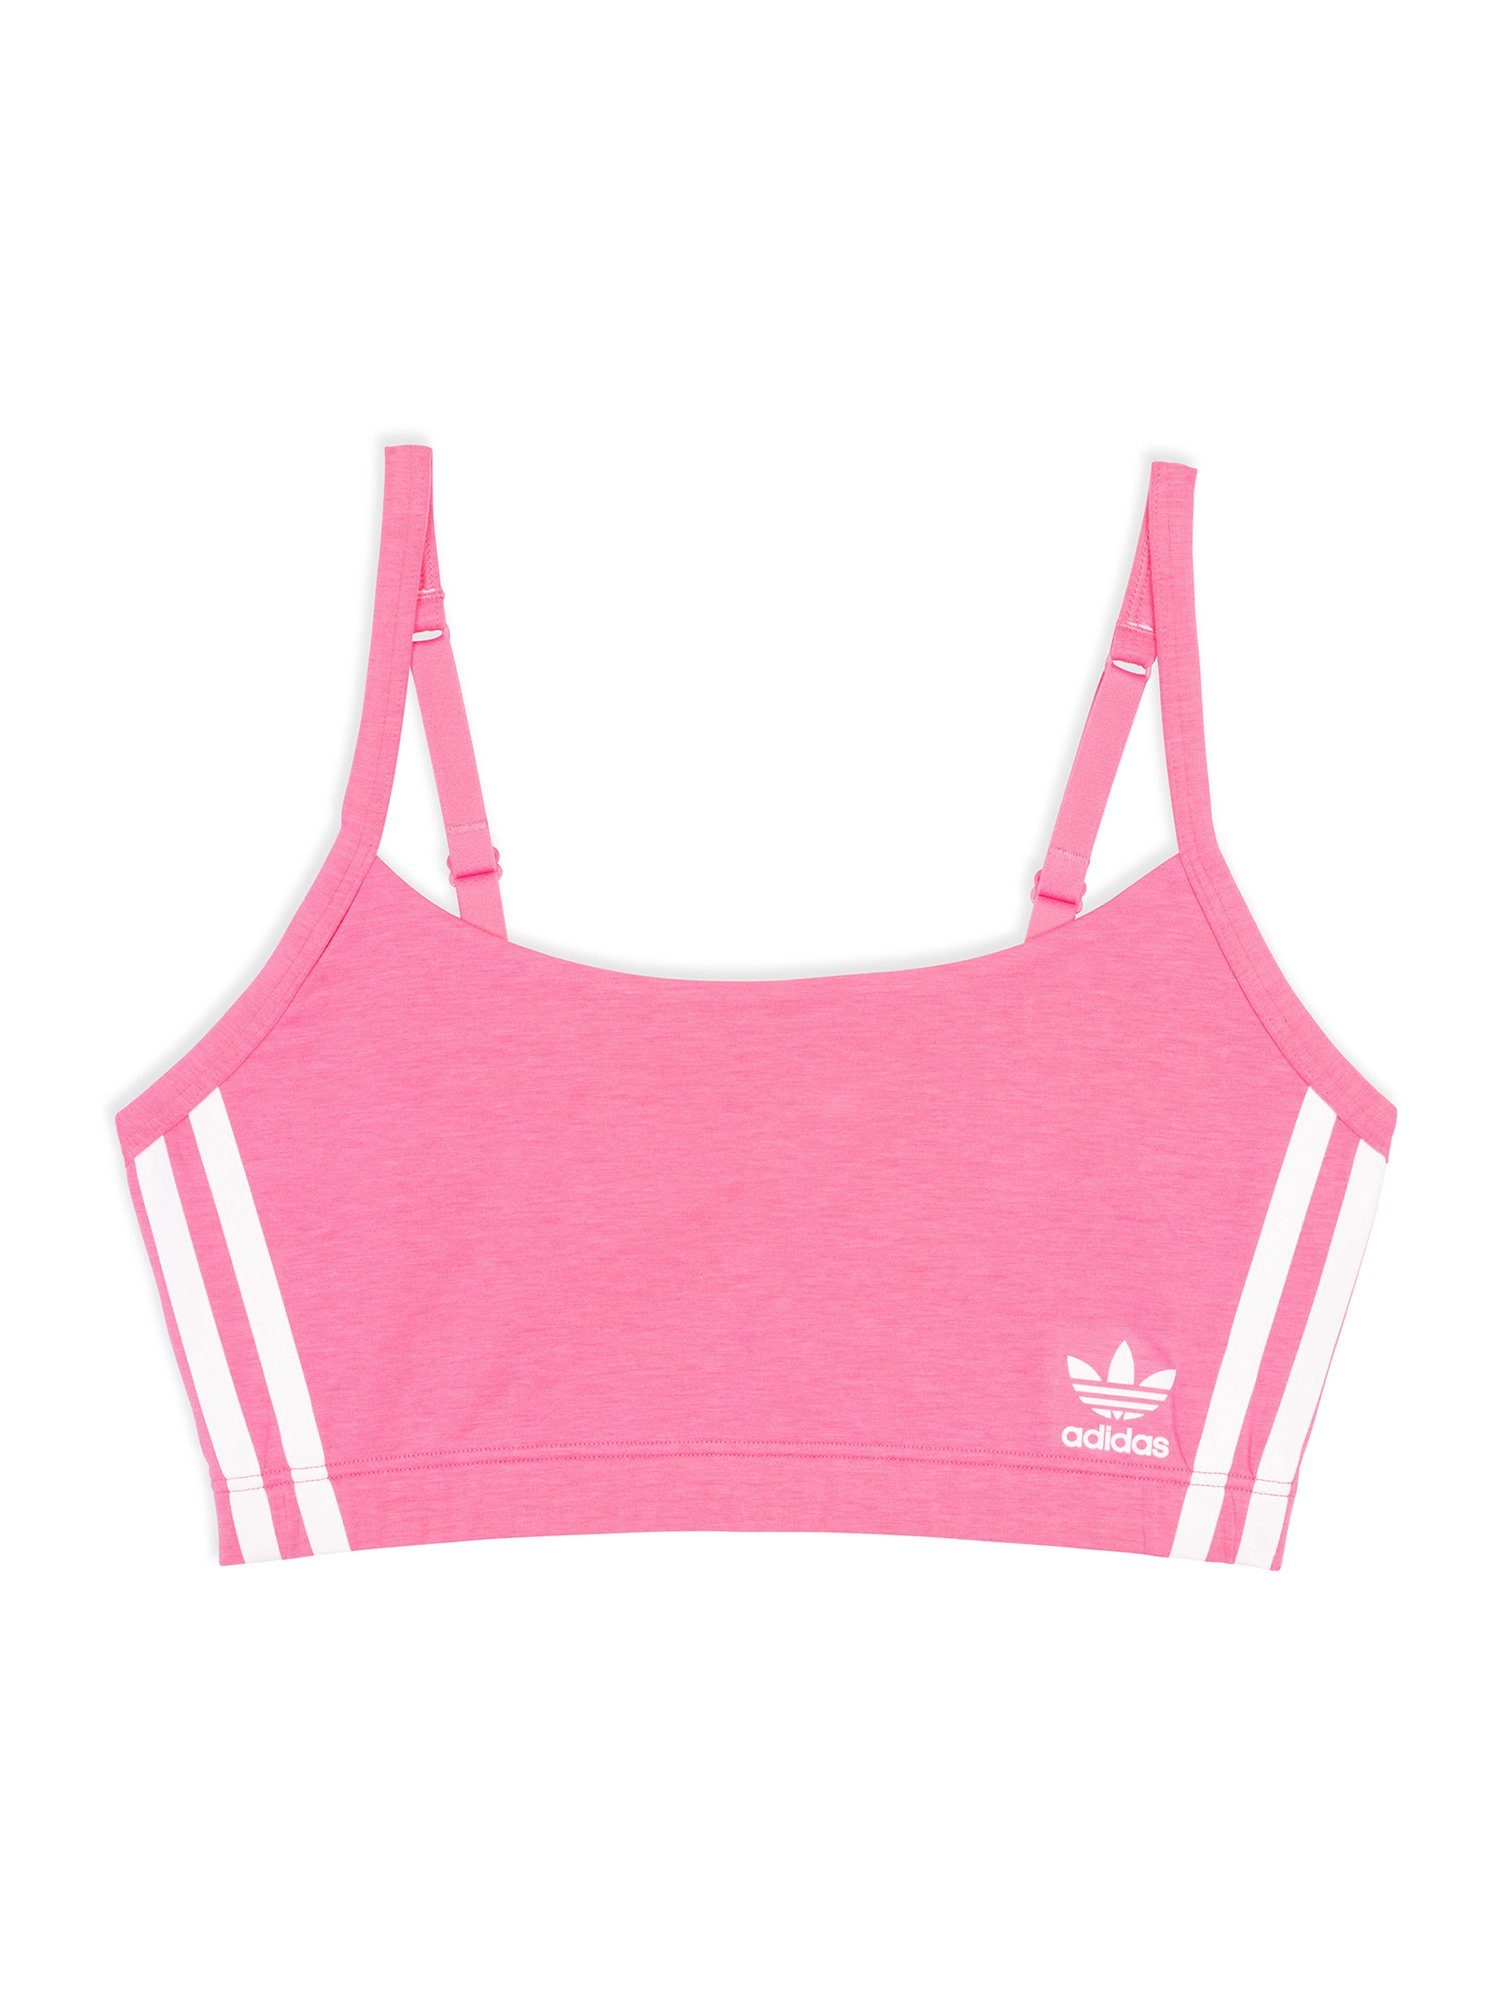 adidas Originals Bralette Scoop Bustier bra BH Originals lucid pink